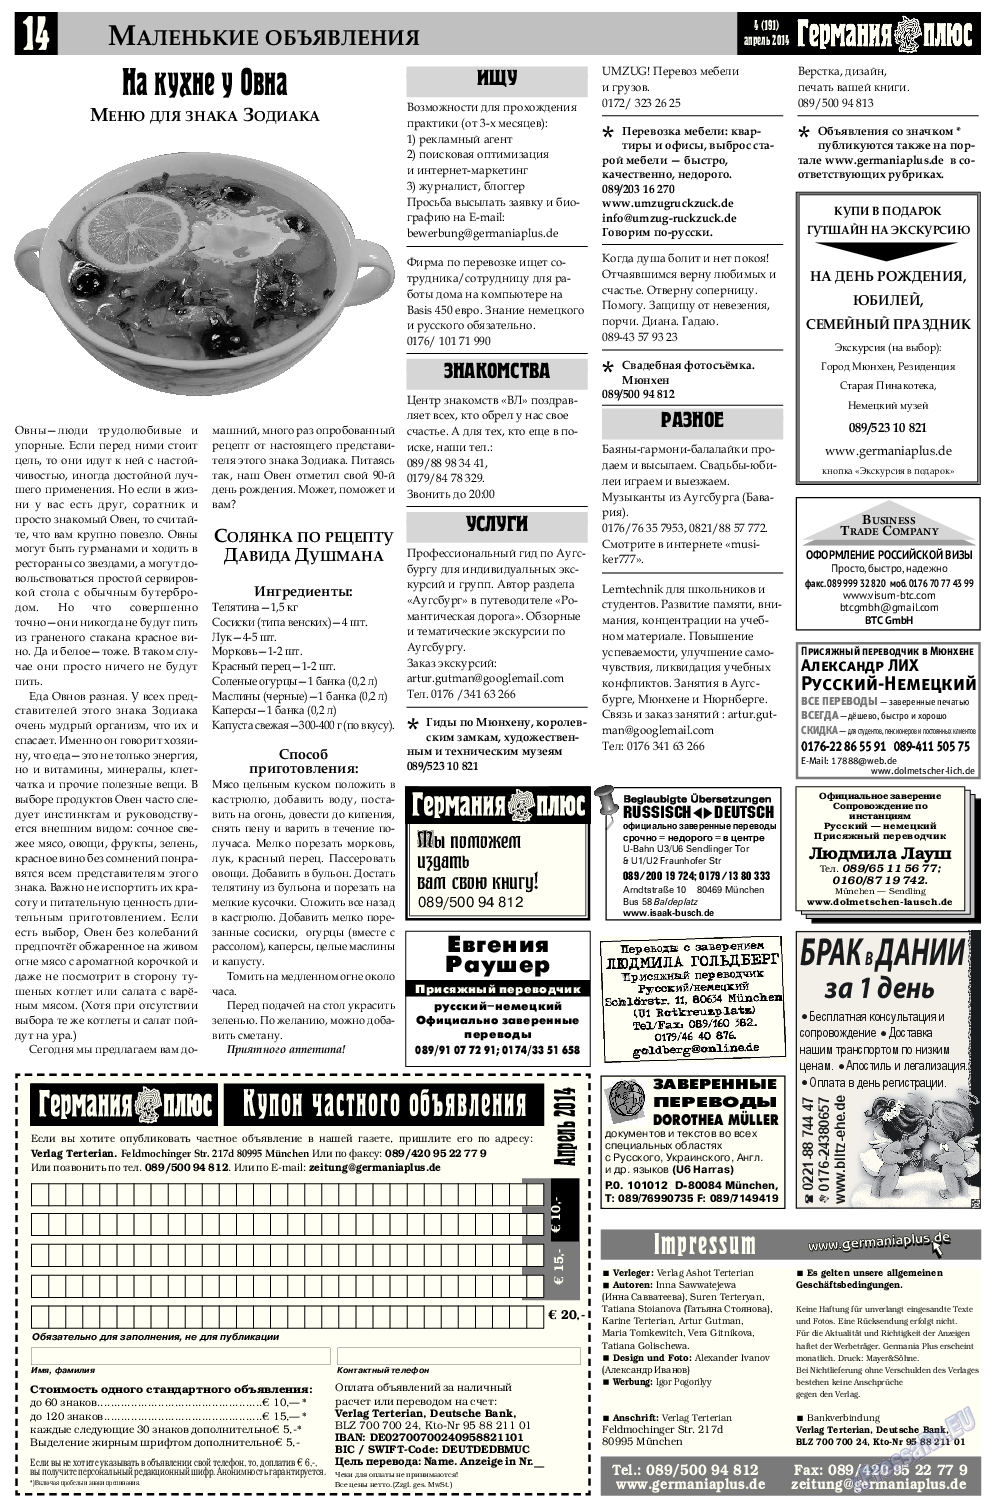 Германия плюс, газета. 2014 №4 стр.14